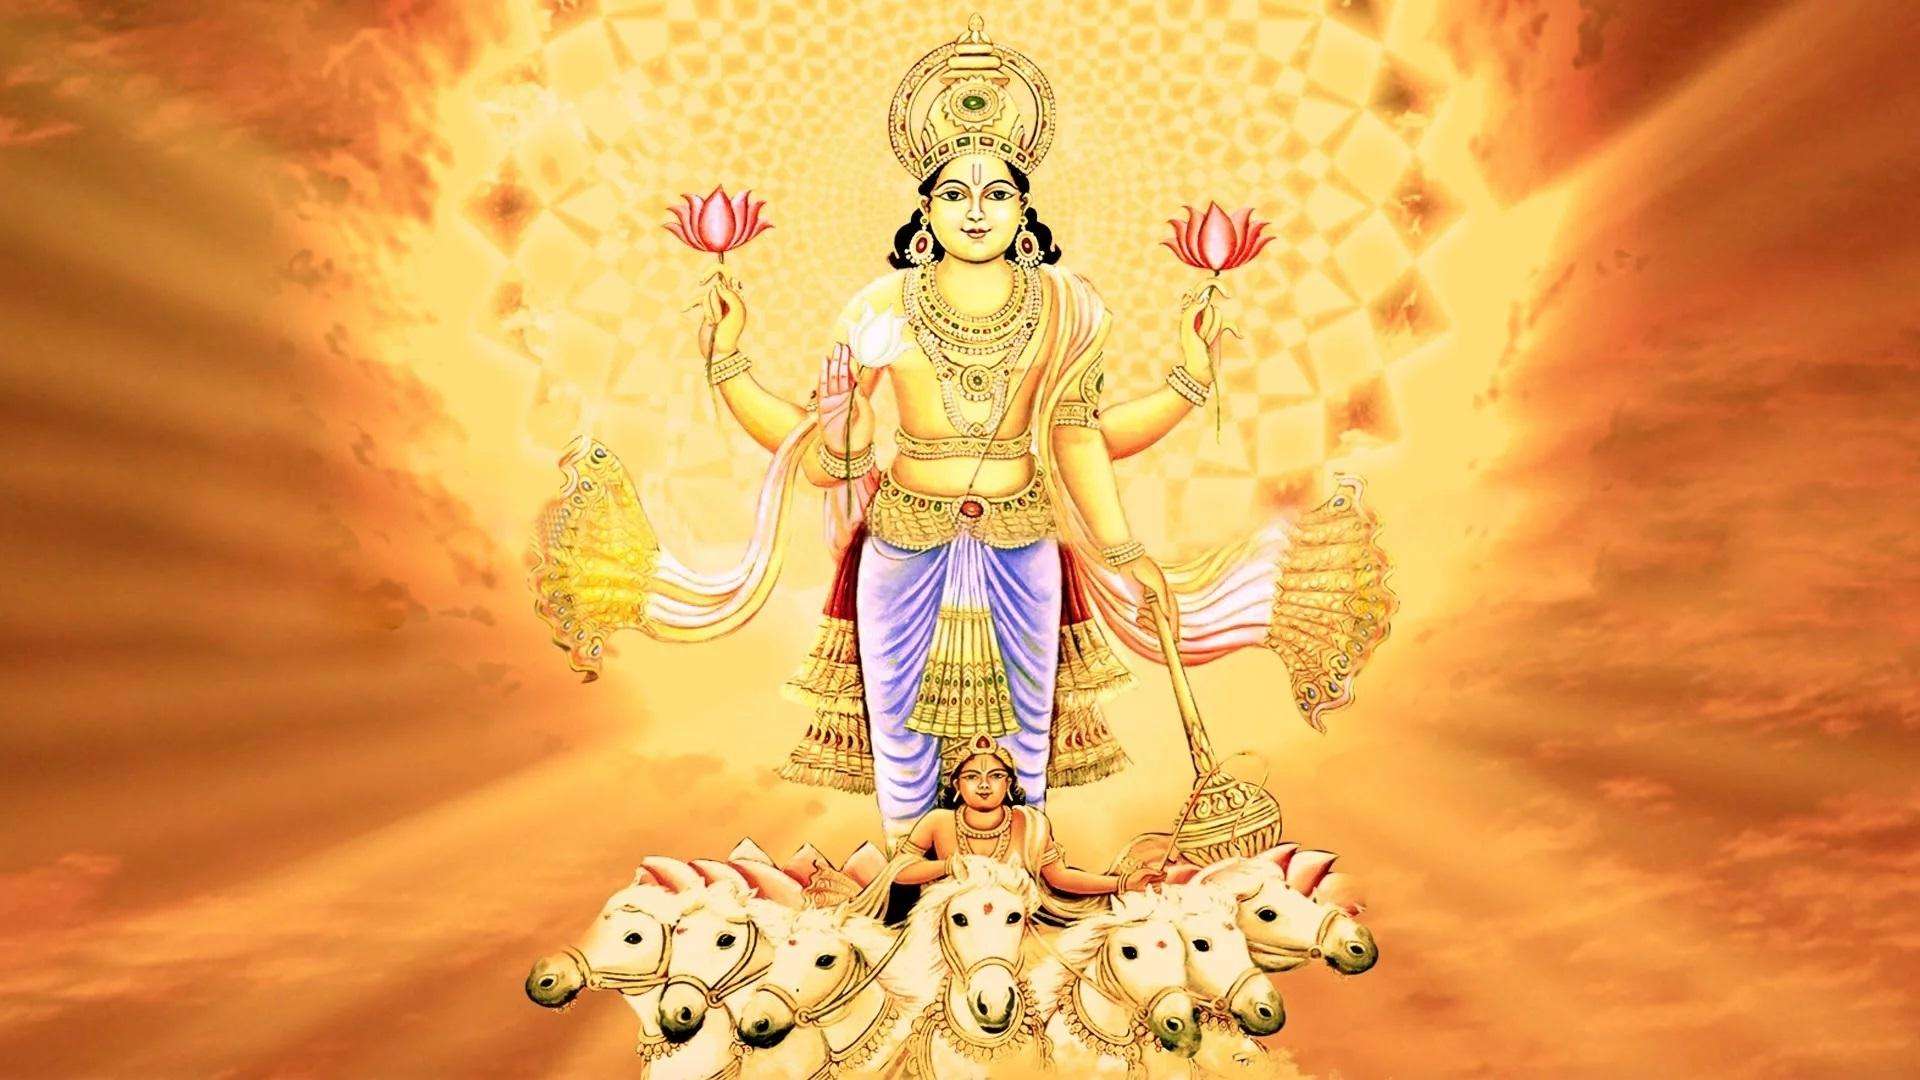 Suryadev 12 names: सूर्य पूजा में इन 12 नामों कर करें जाप, मिलेगा शुभ फल